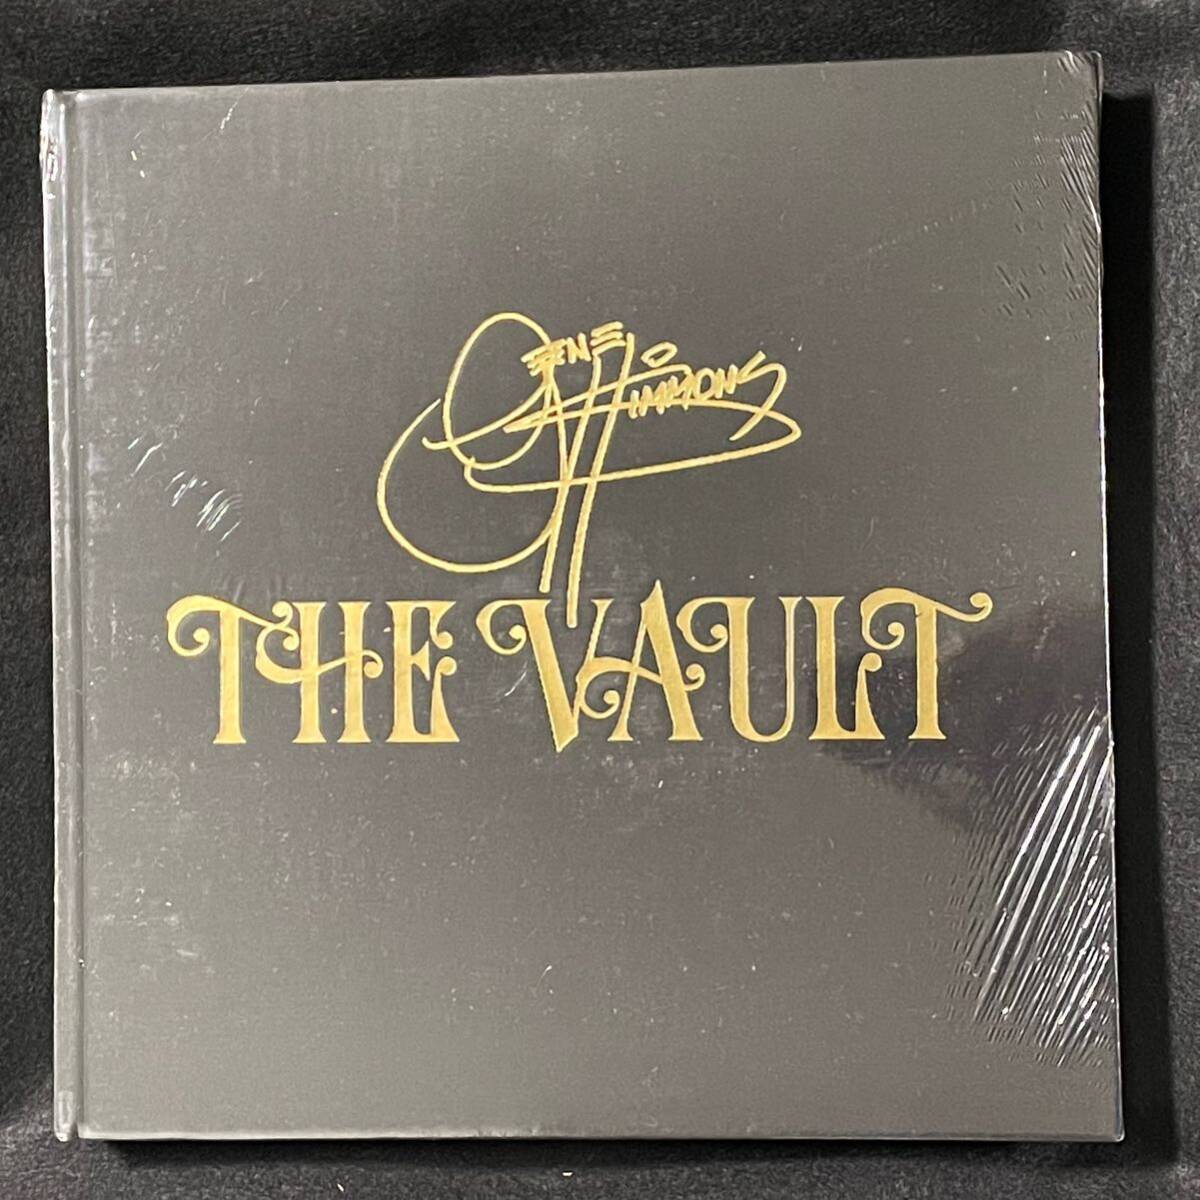 【最終値下】Gene Simmons The vault 公式写真集 デモCD 11枚付属 ジーンシモンズ KISS キッスの画像2